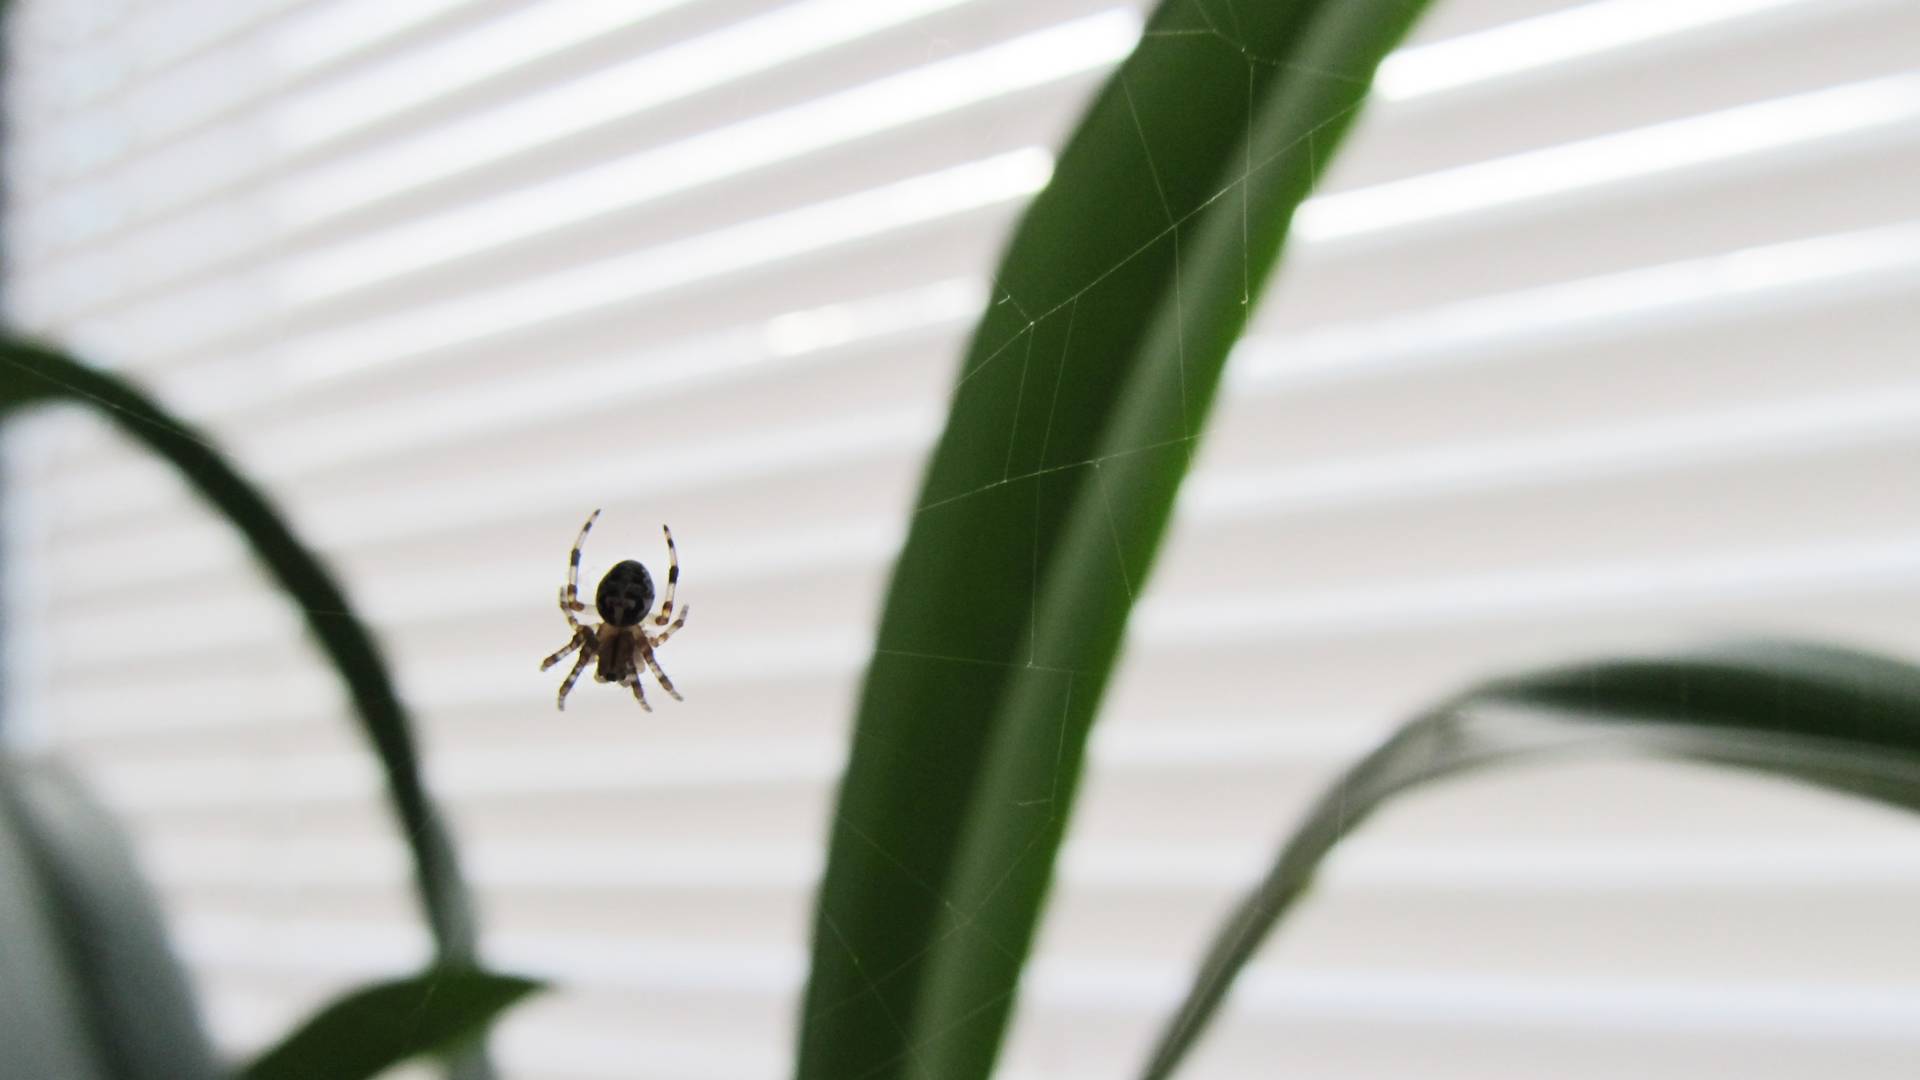 Arachnofobia, czyli lęk przed pająkami